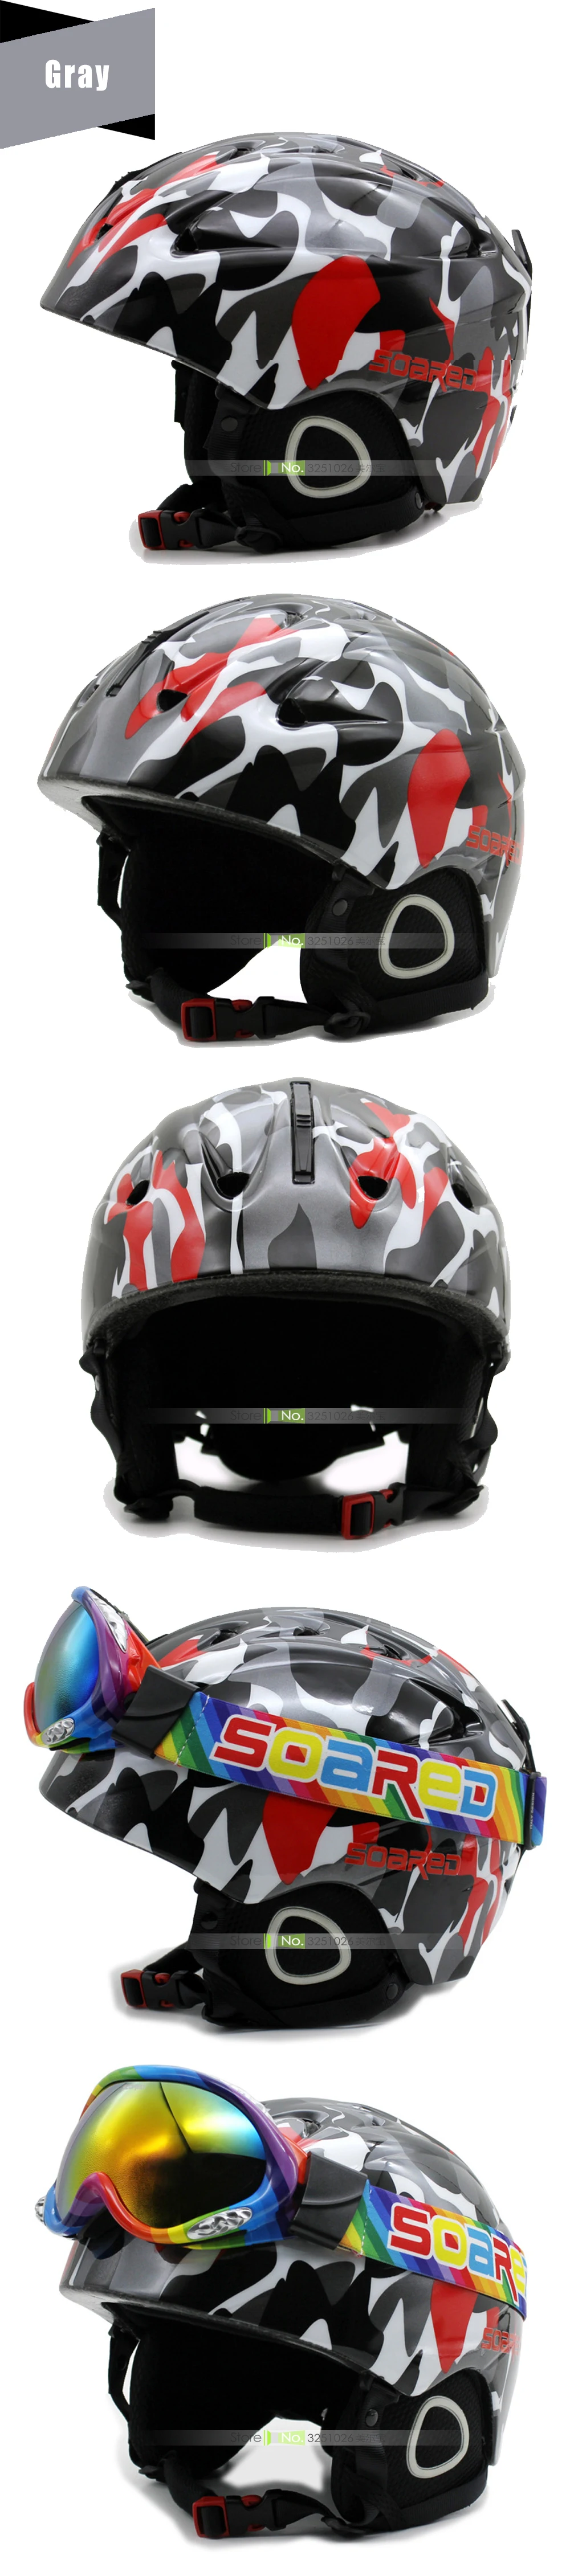 Фирменный мужской/женский/детский лыжный шлем с очками, зимний теплый шлем для сноуборда, маска для скейтборда, мото/велосипед/лыжи/сани, Спортивная безопасность